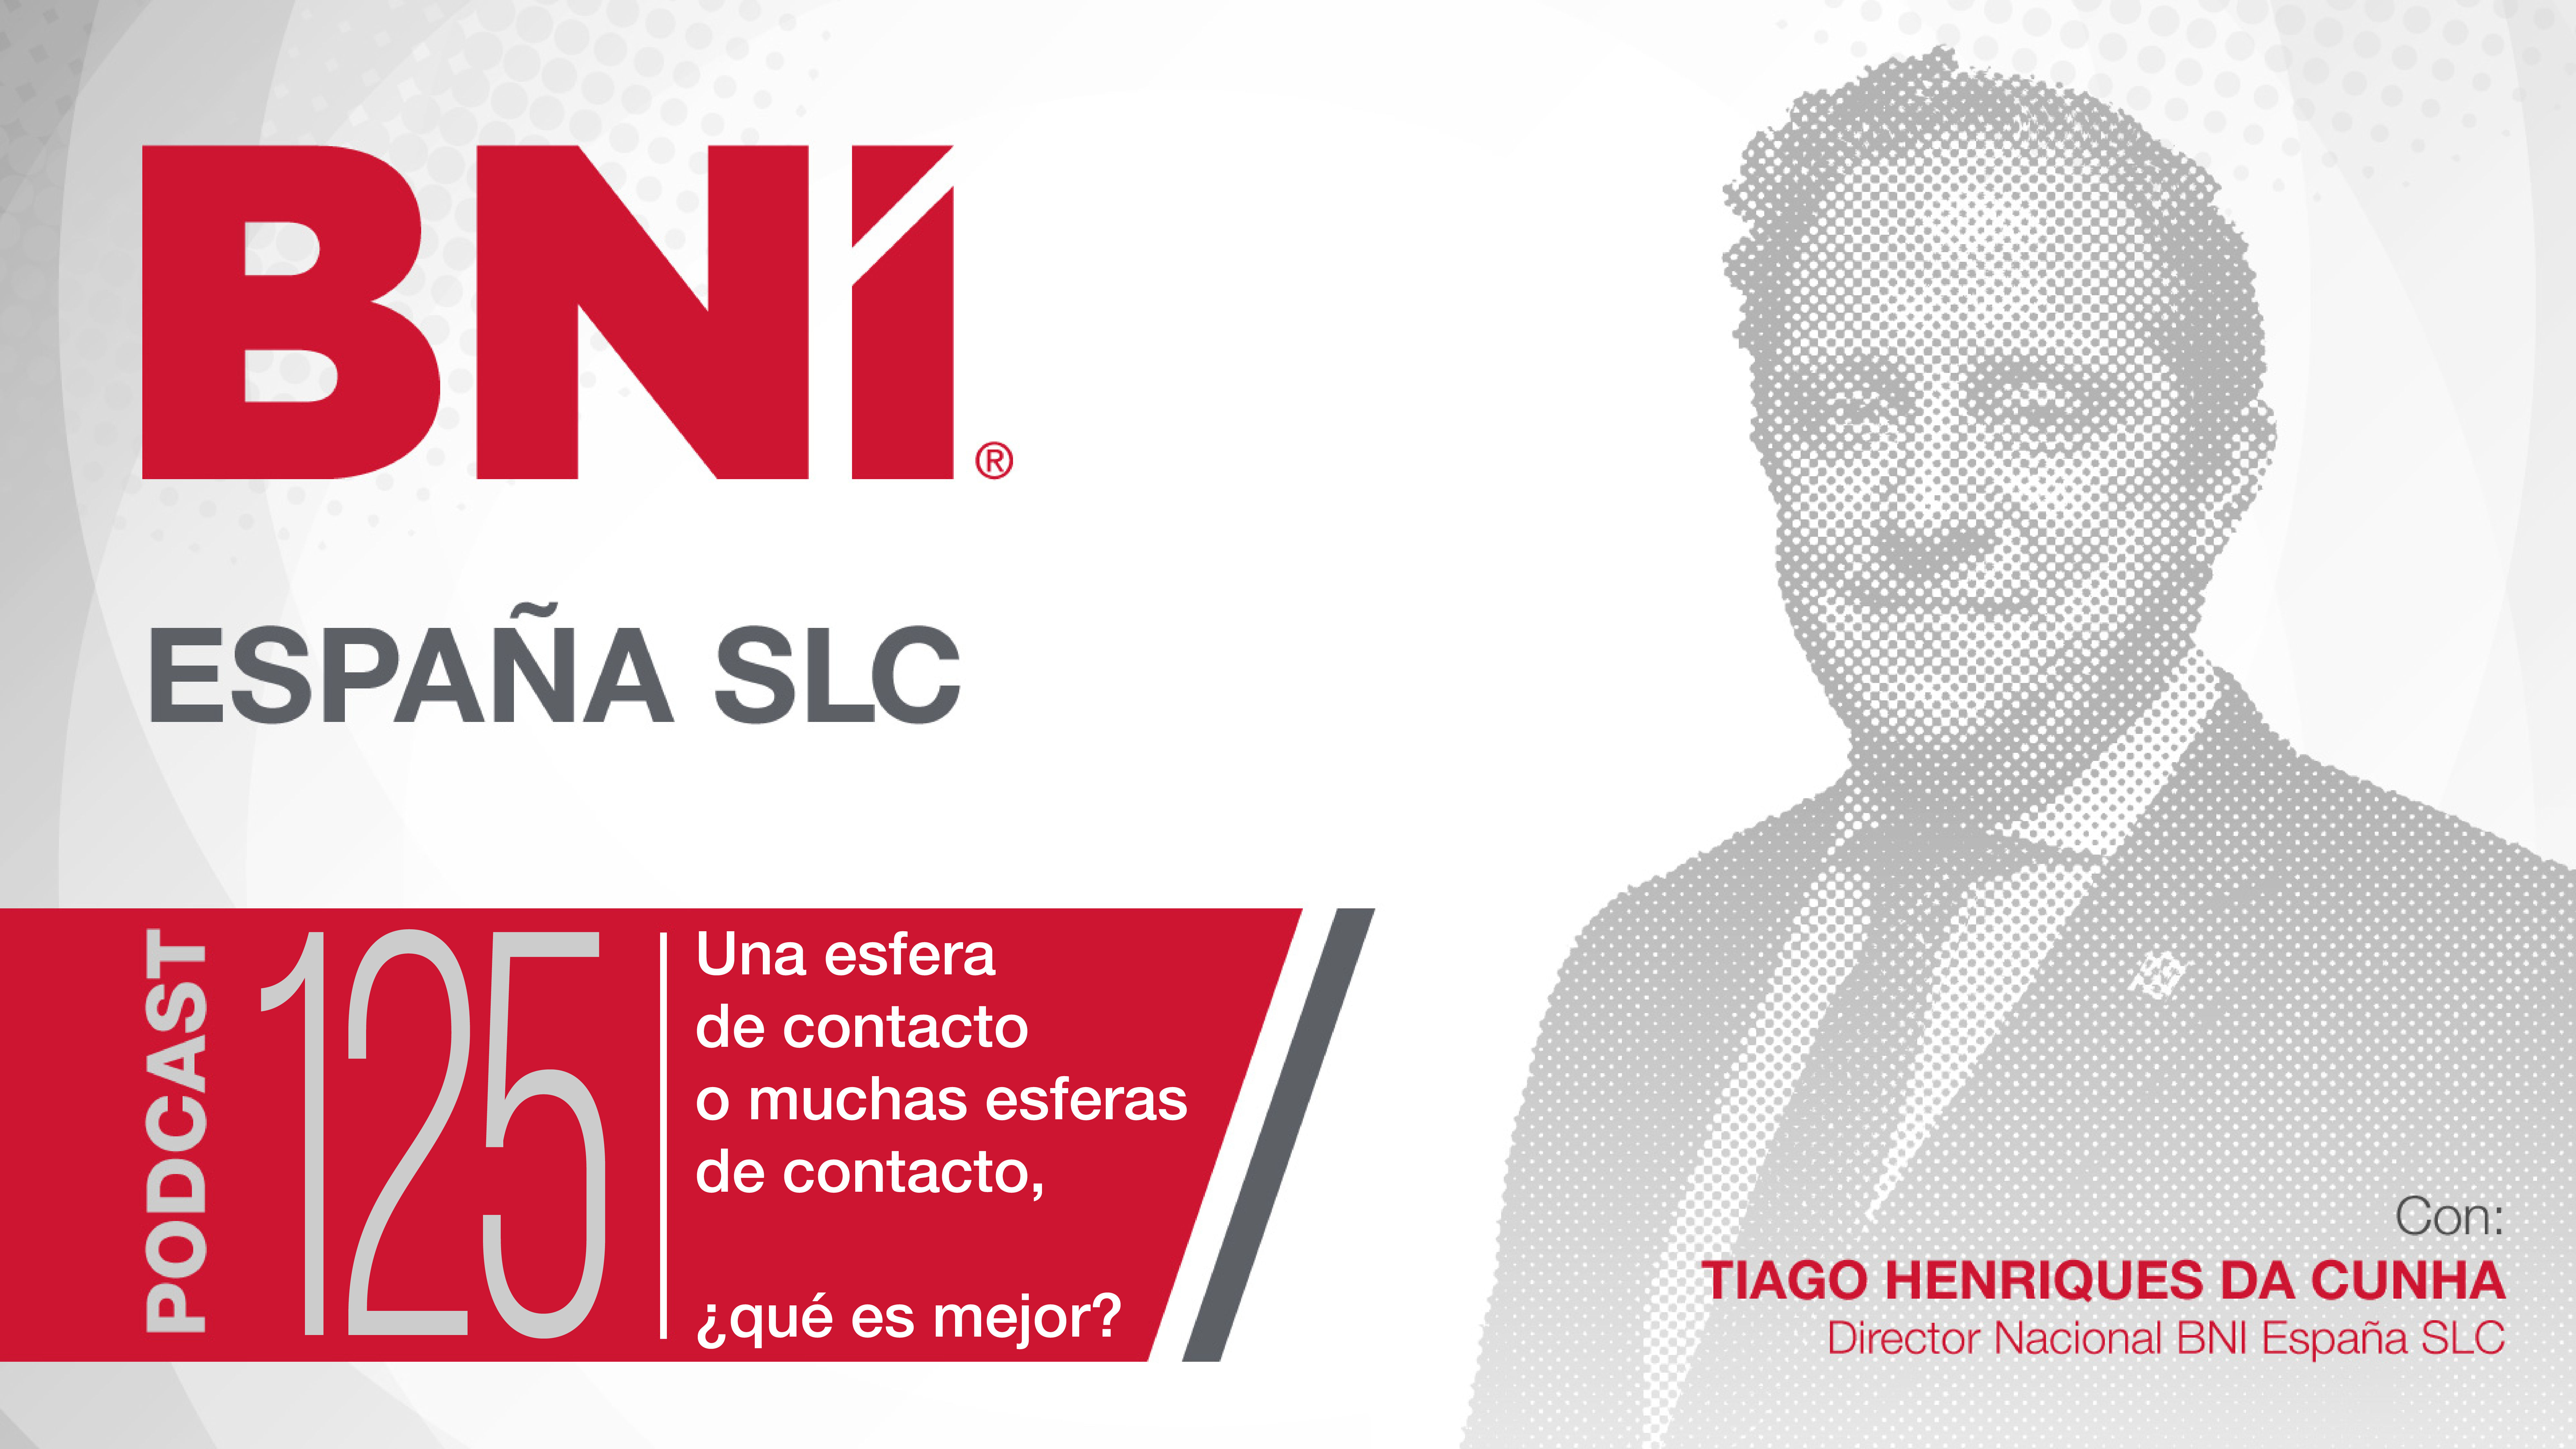 Tiago Henriques Da Cunha Director Nacional BNI España - Podcast 125